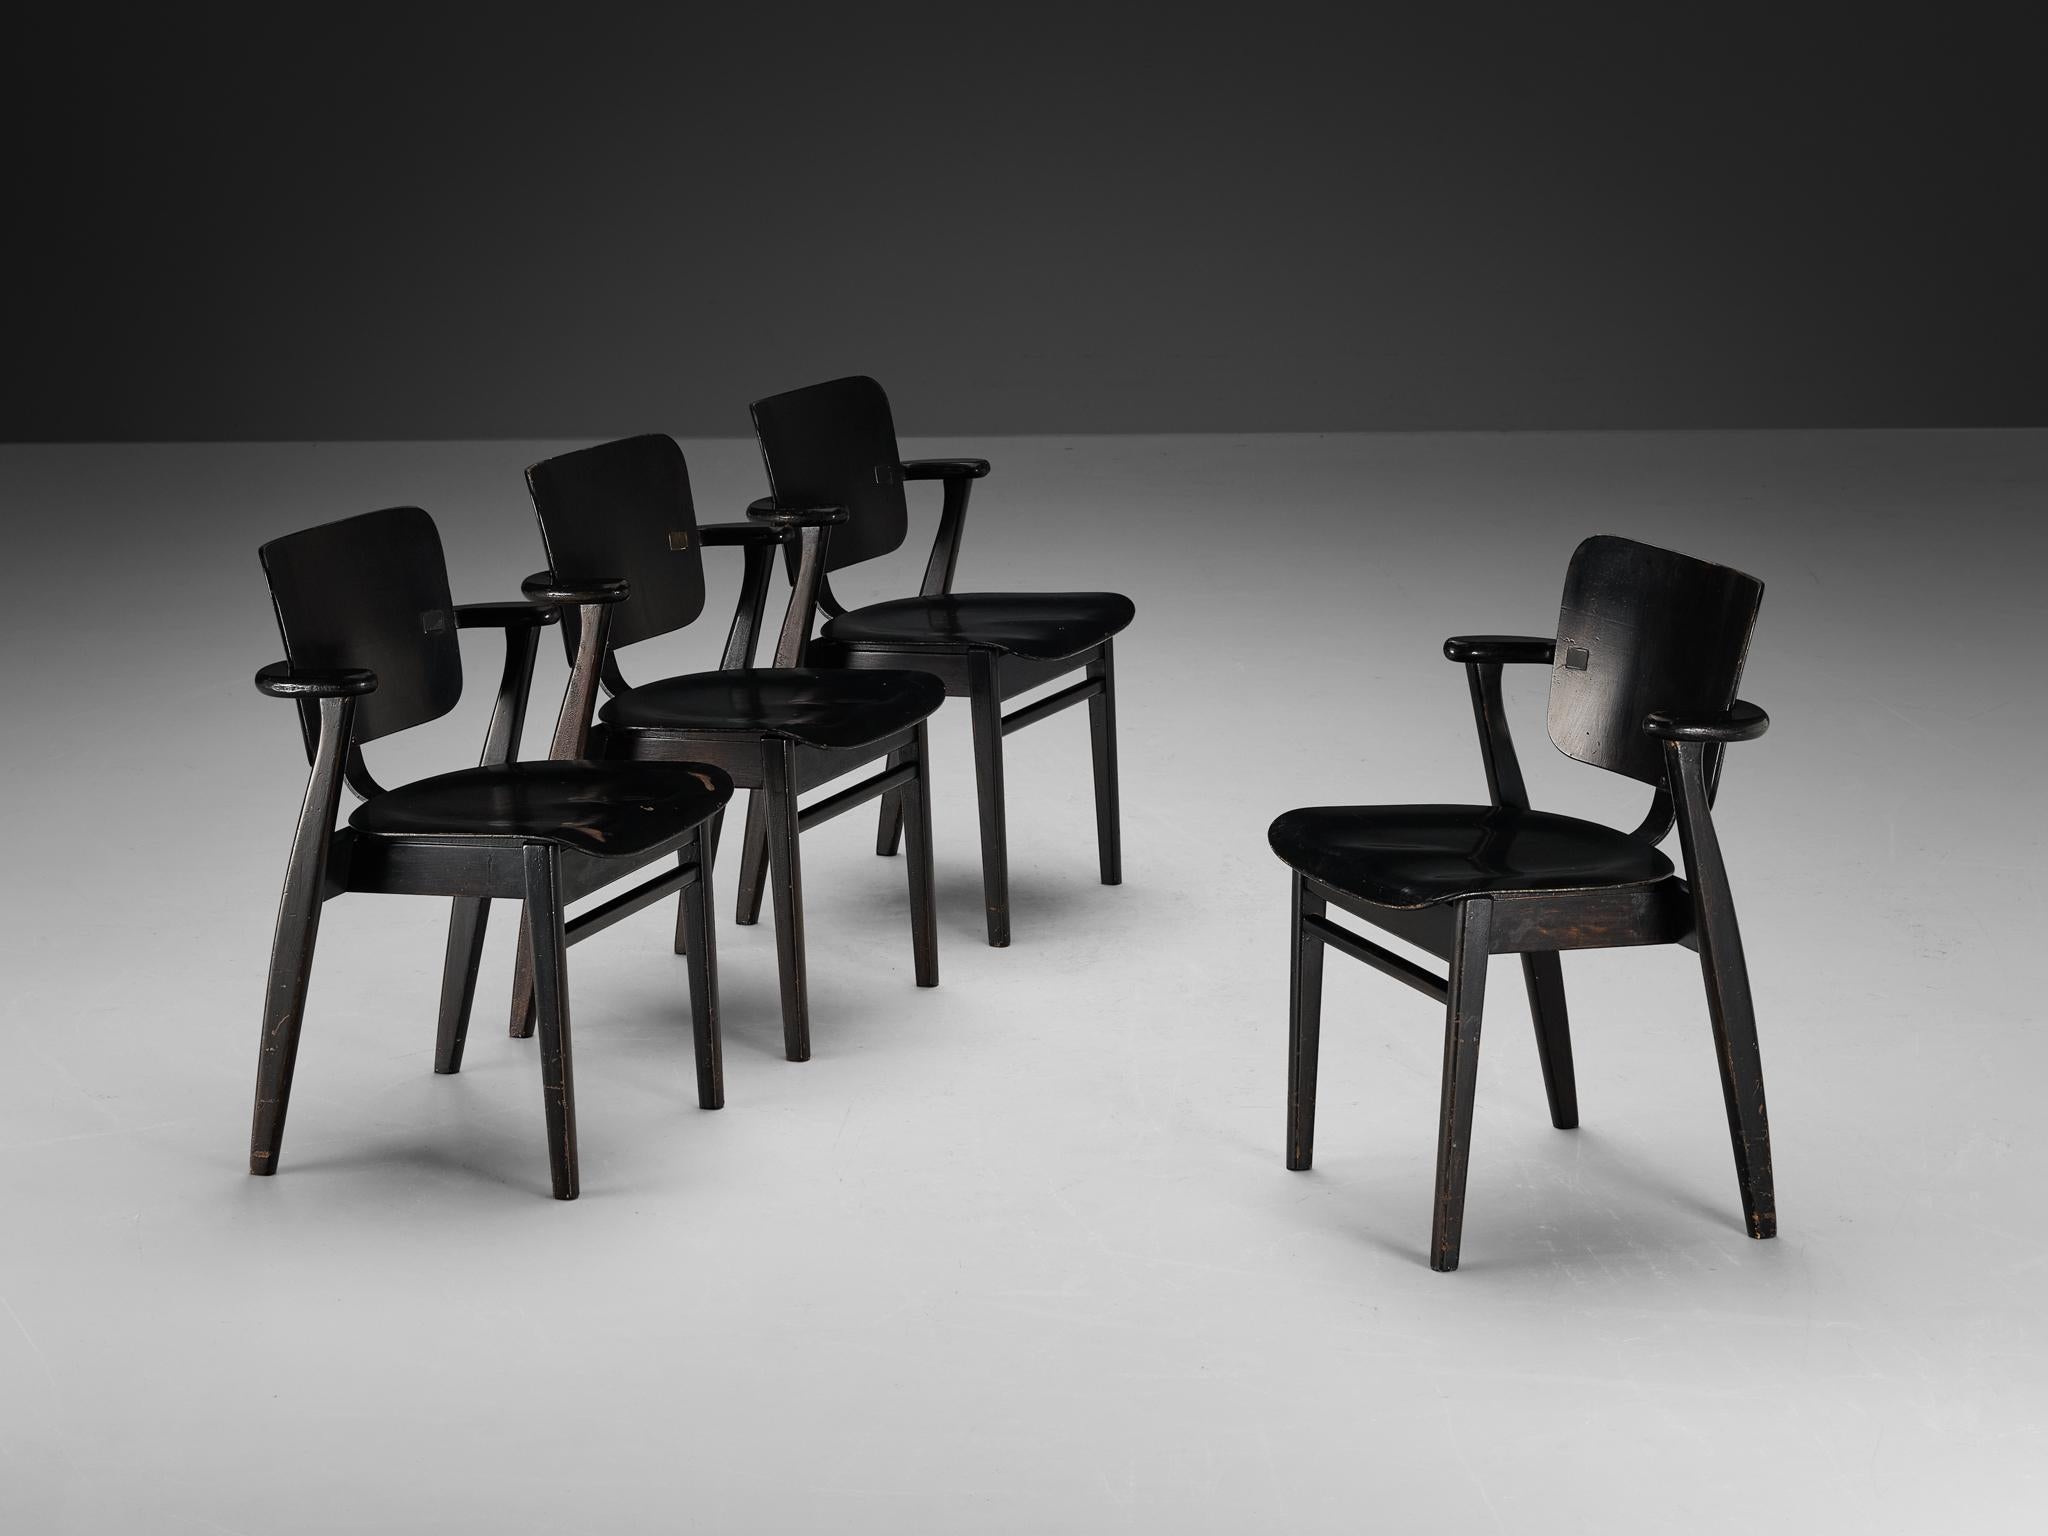 Ilmari Tapiovaara, ensemble de quatre fauteuils, teck teinté, métal, Finlande, 1953

Il s'agit d'un magnifique ensemble de fauteuils Domus du designer finlandais Ilmari Tapiovaara. Exécuté dans une couleur noire, le cadre comprend du contreplaqué de